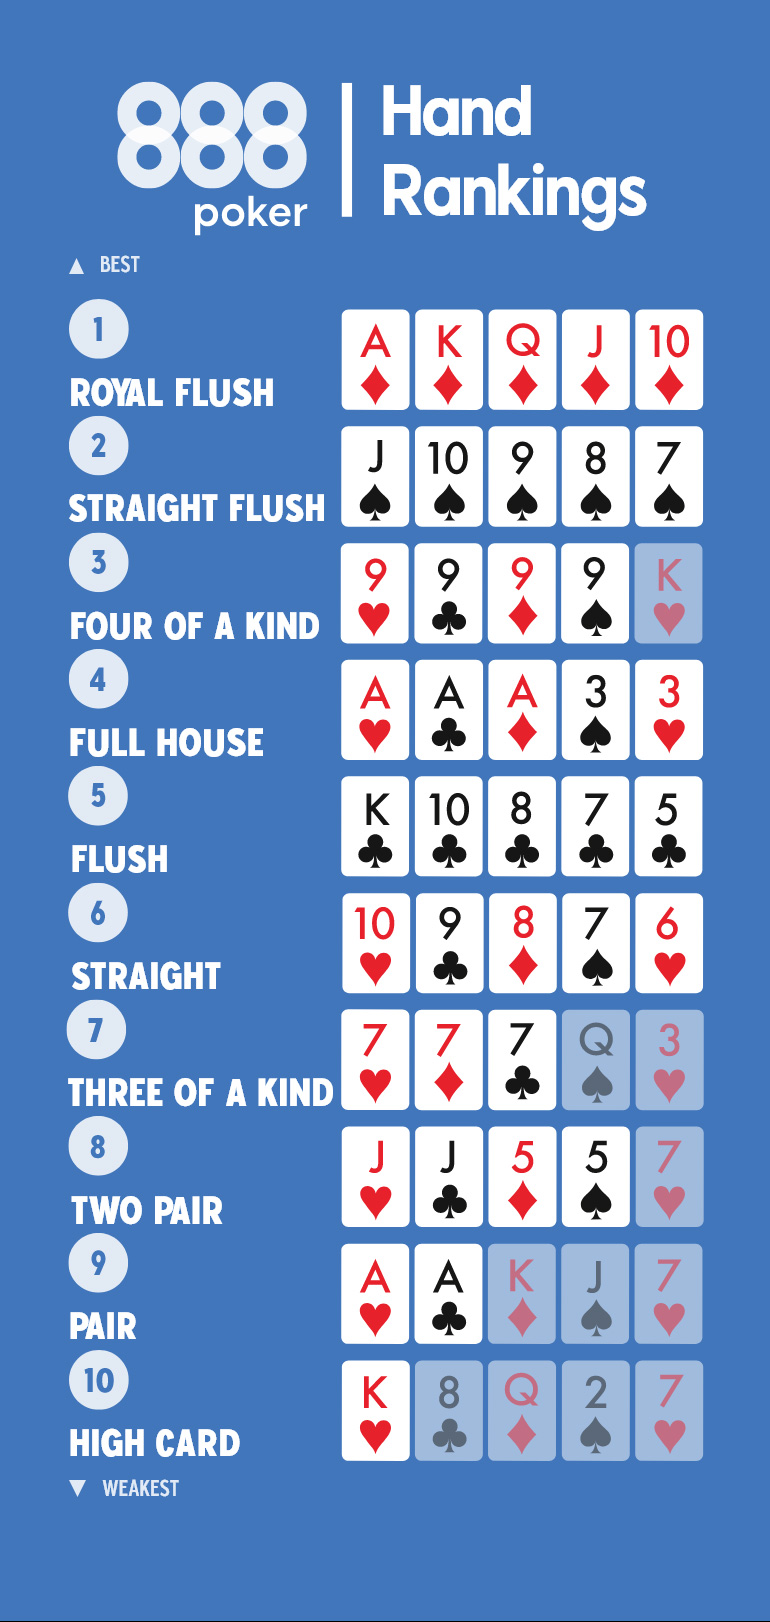 Poker Hand Ranking - Poker Hands ශ්‍රේණිගත කිරීම සඳහා සම්පූර්ණ මාර්ගෝපදේශය